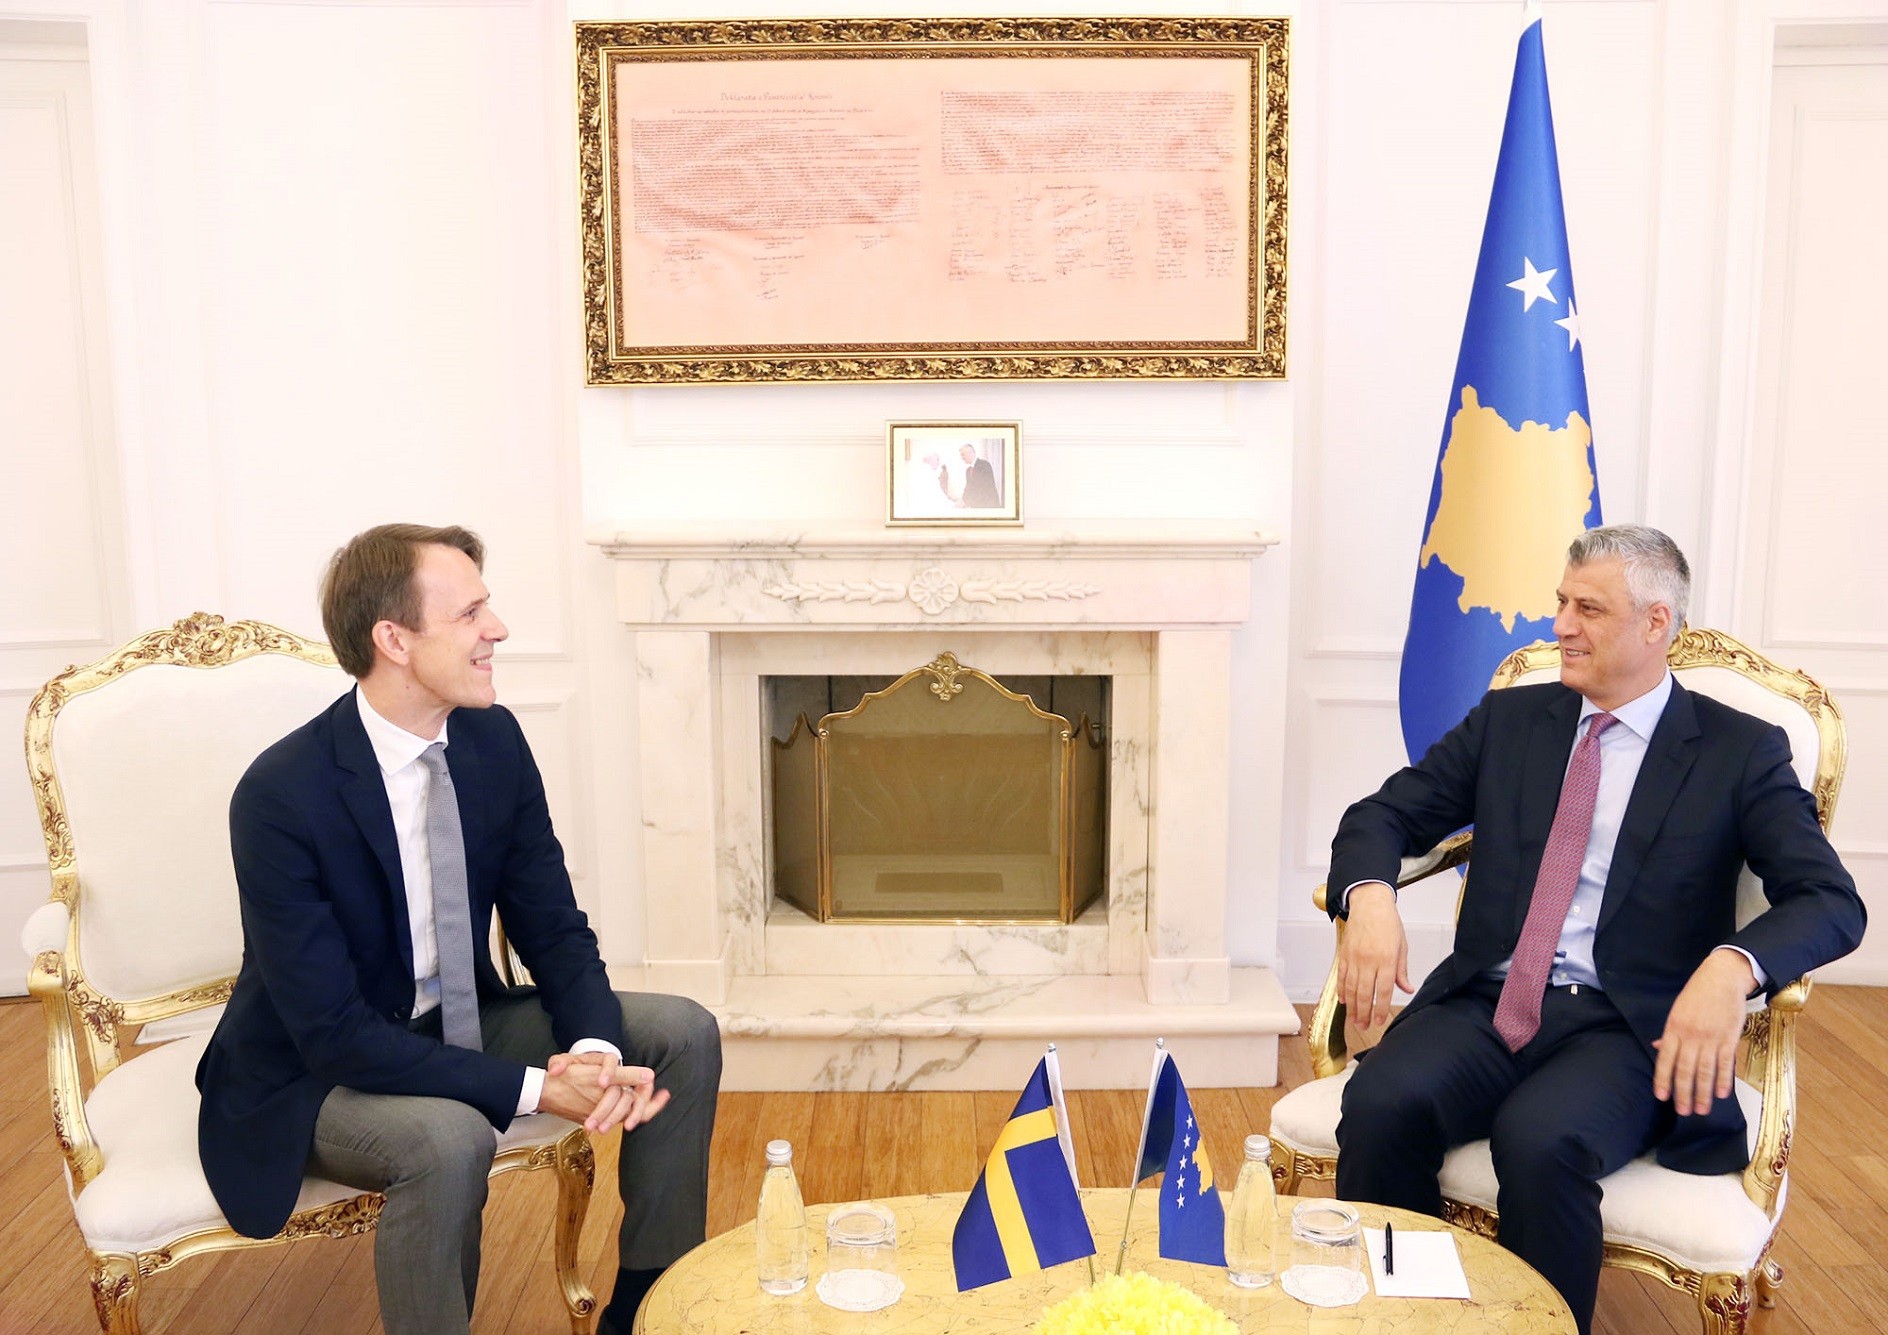 Presidenti Thaçi ka pritur në takim lamtumirës ambasadorin e Suedisë